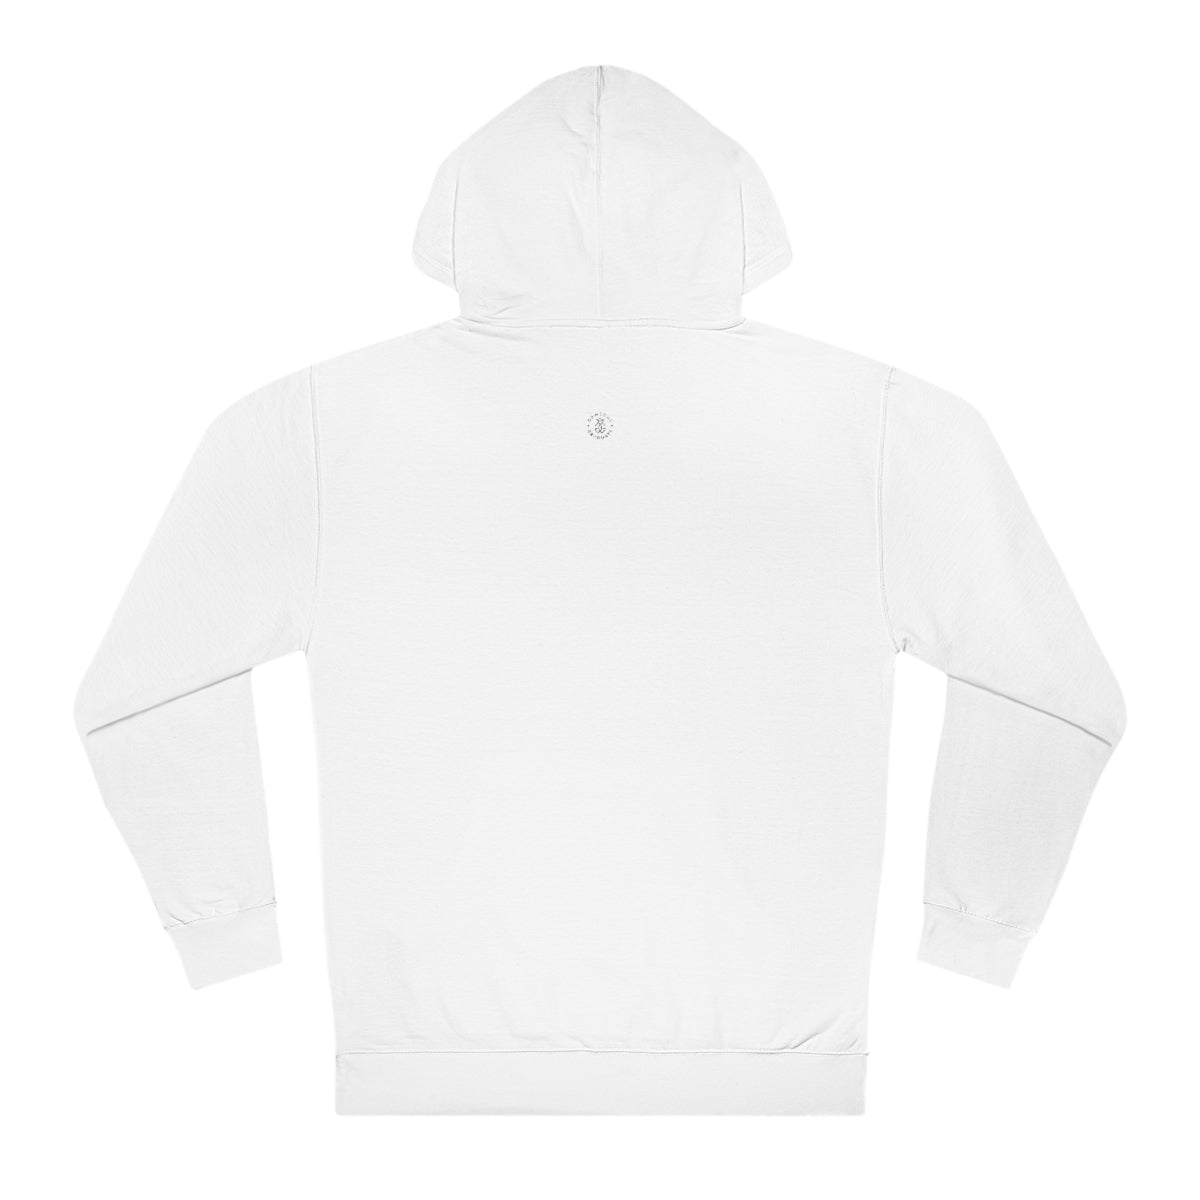 Wisconsin Hooded Sweatshirt - GG - ITC